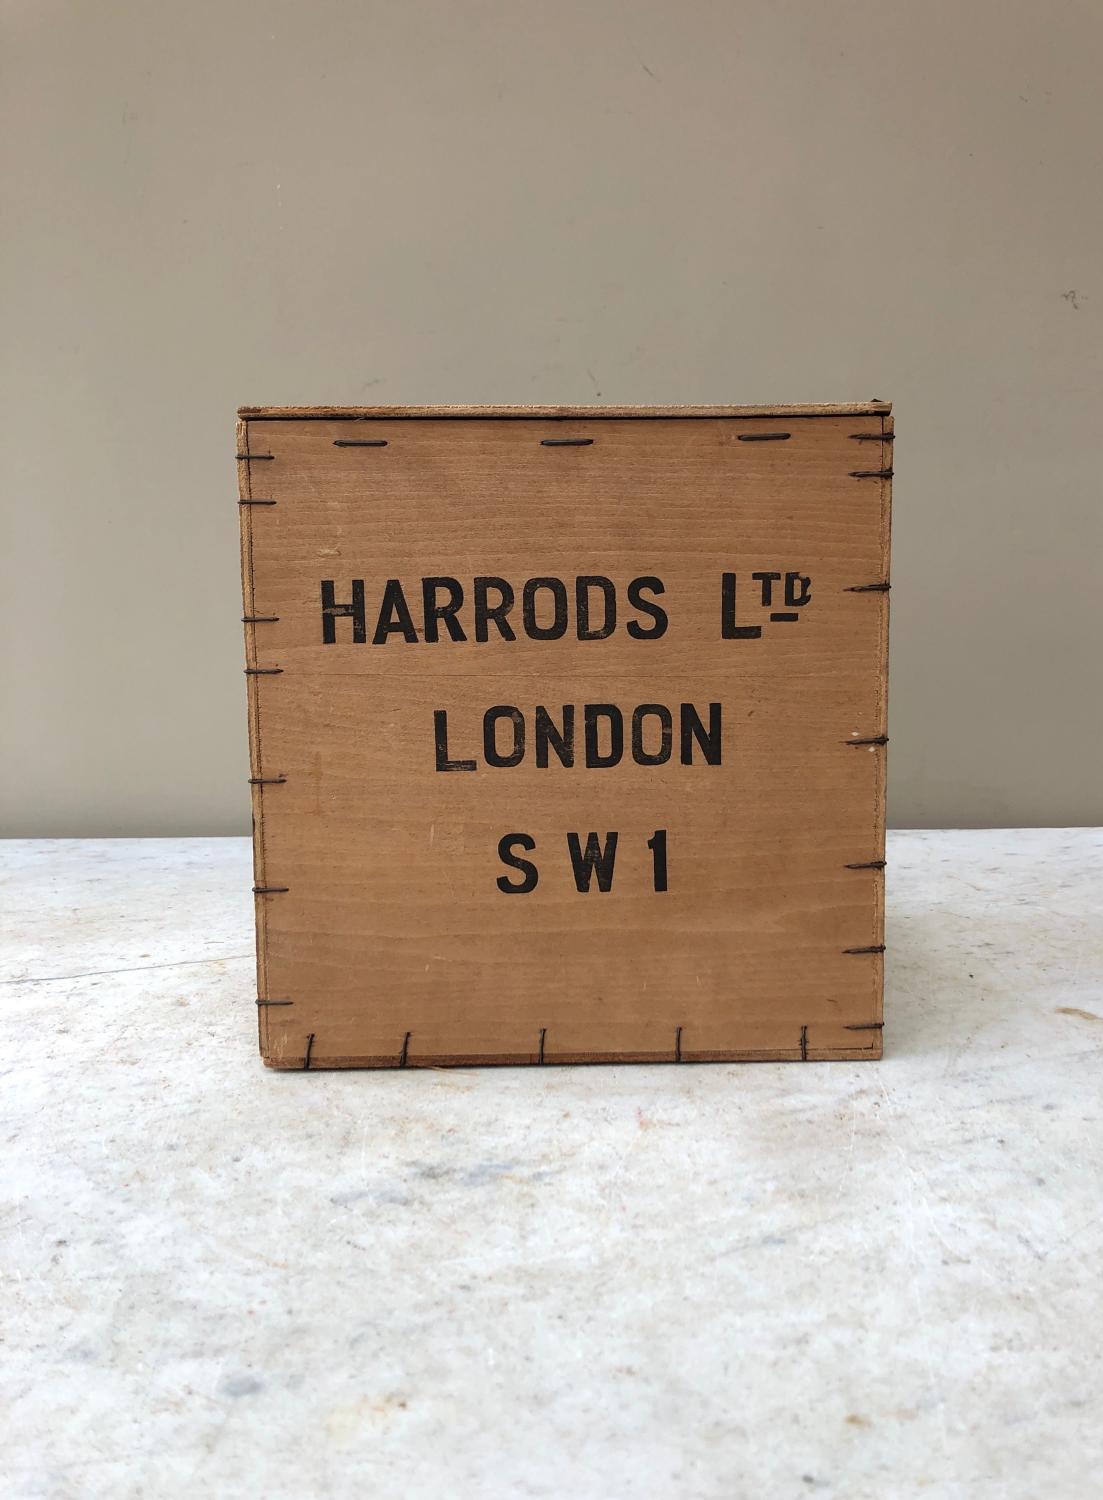 Early 20th Century Wooden 5lb Tea Box - Harrods Ltd London SW!